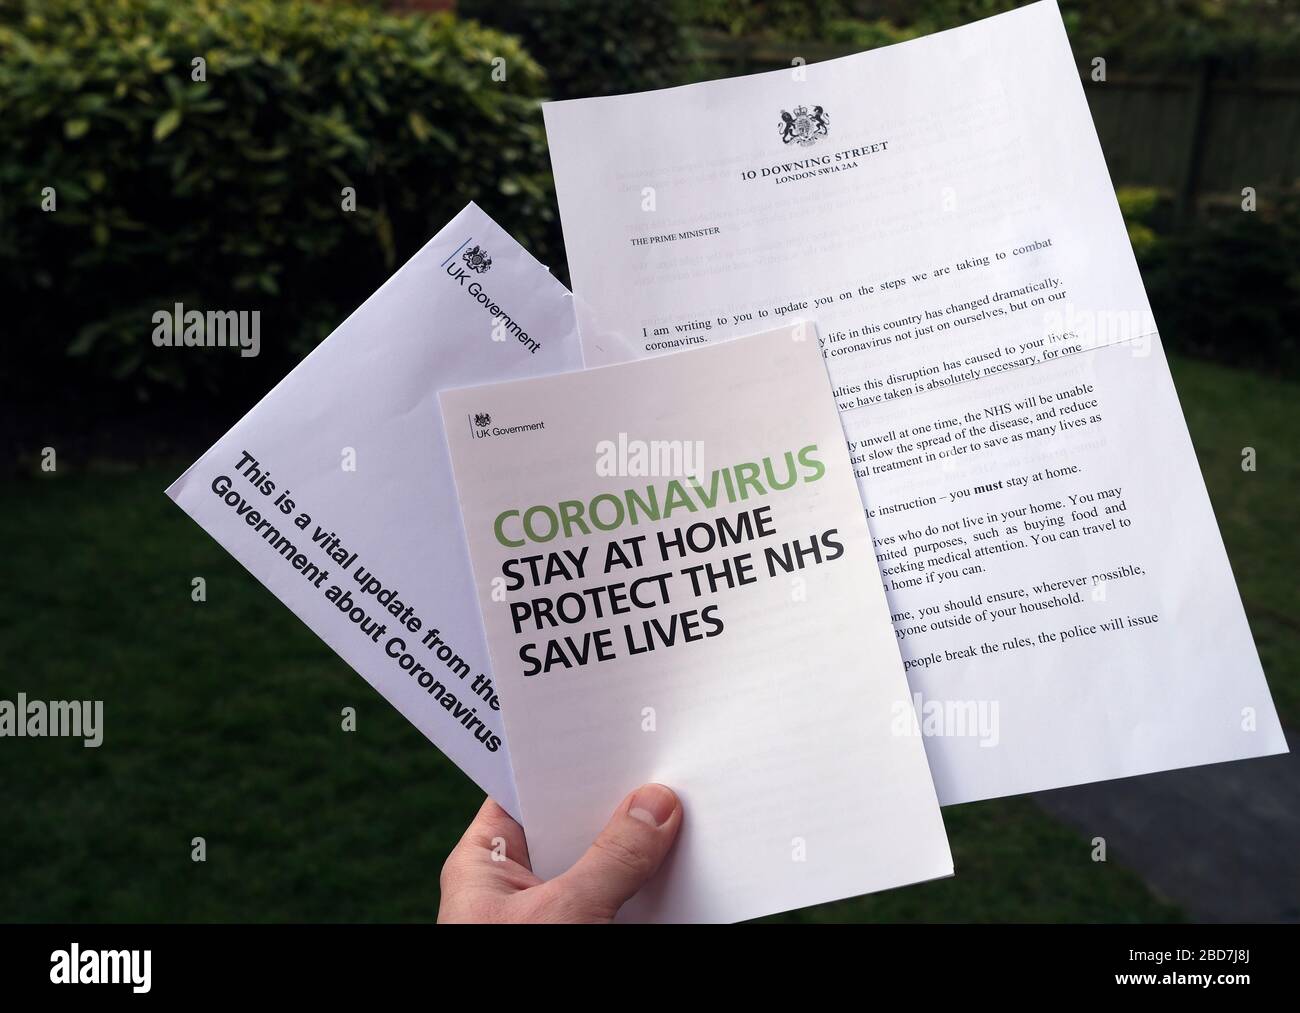 Stone / Reino Unido - 6 de abril de 2020: Carta del Gobierno del Reino Unido del primer Ministro a los hogares del Reino Unido informando sobre el Coronavirus y pidiendo permanecer ho Foto de stock